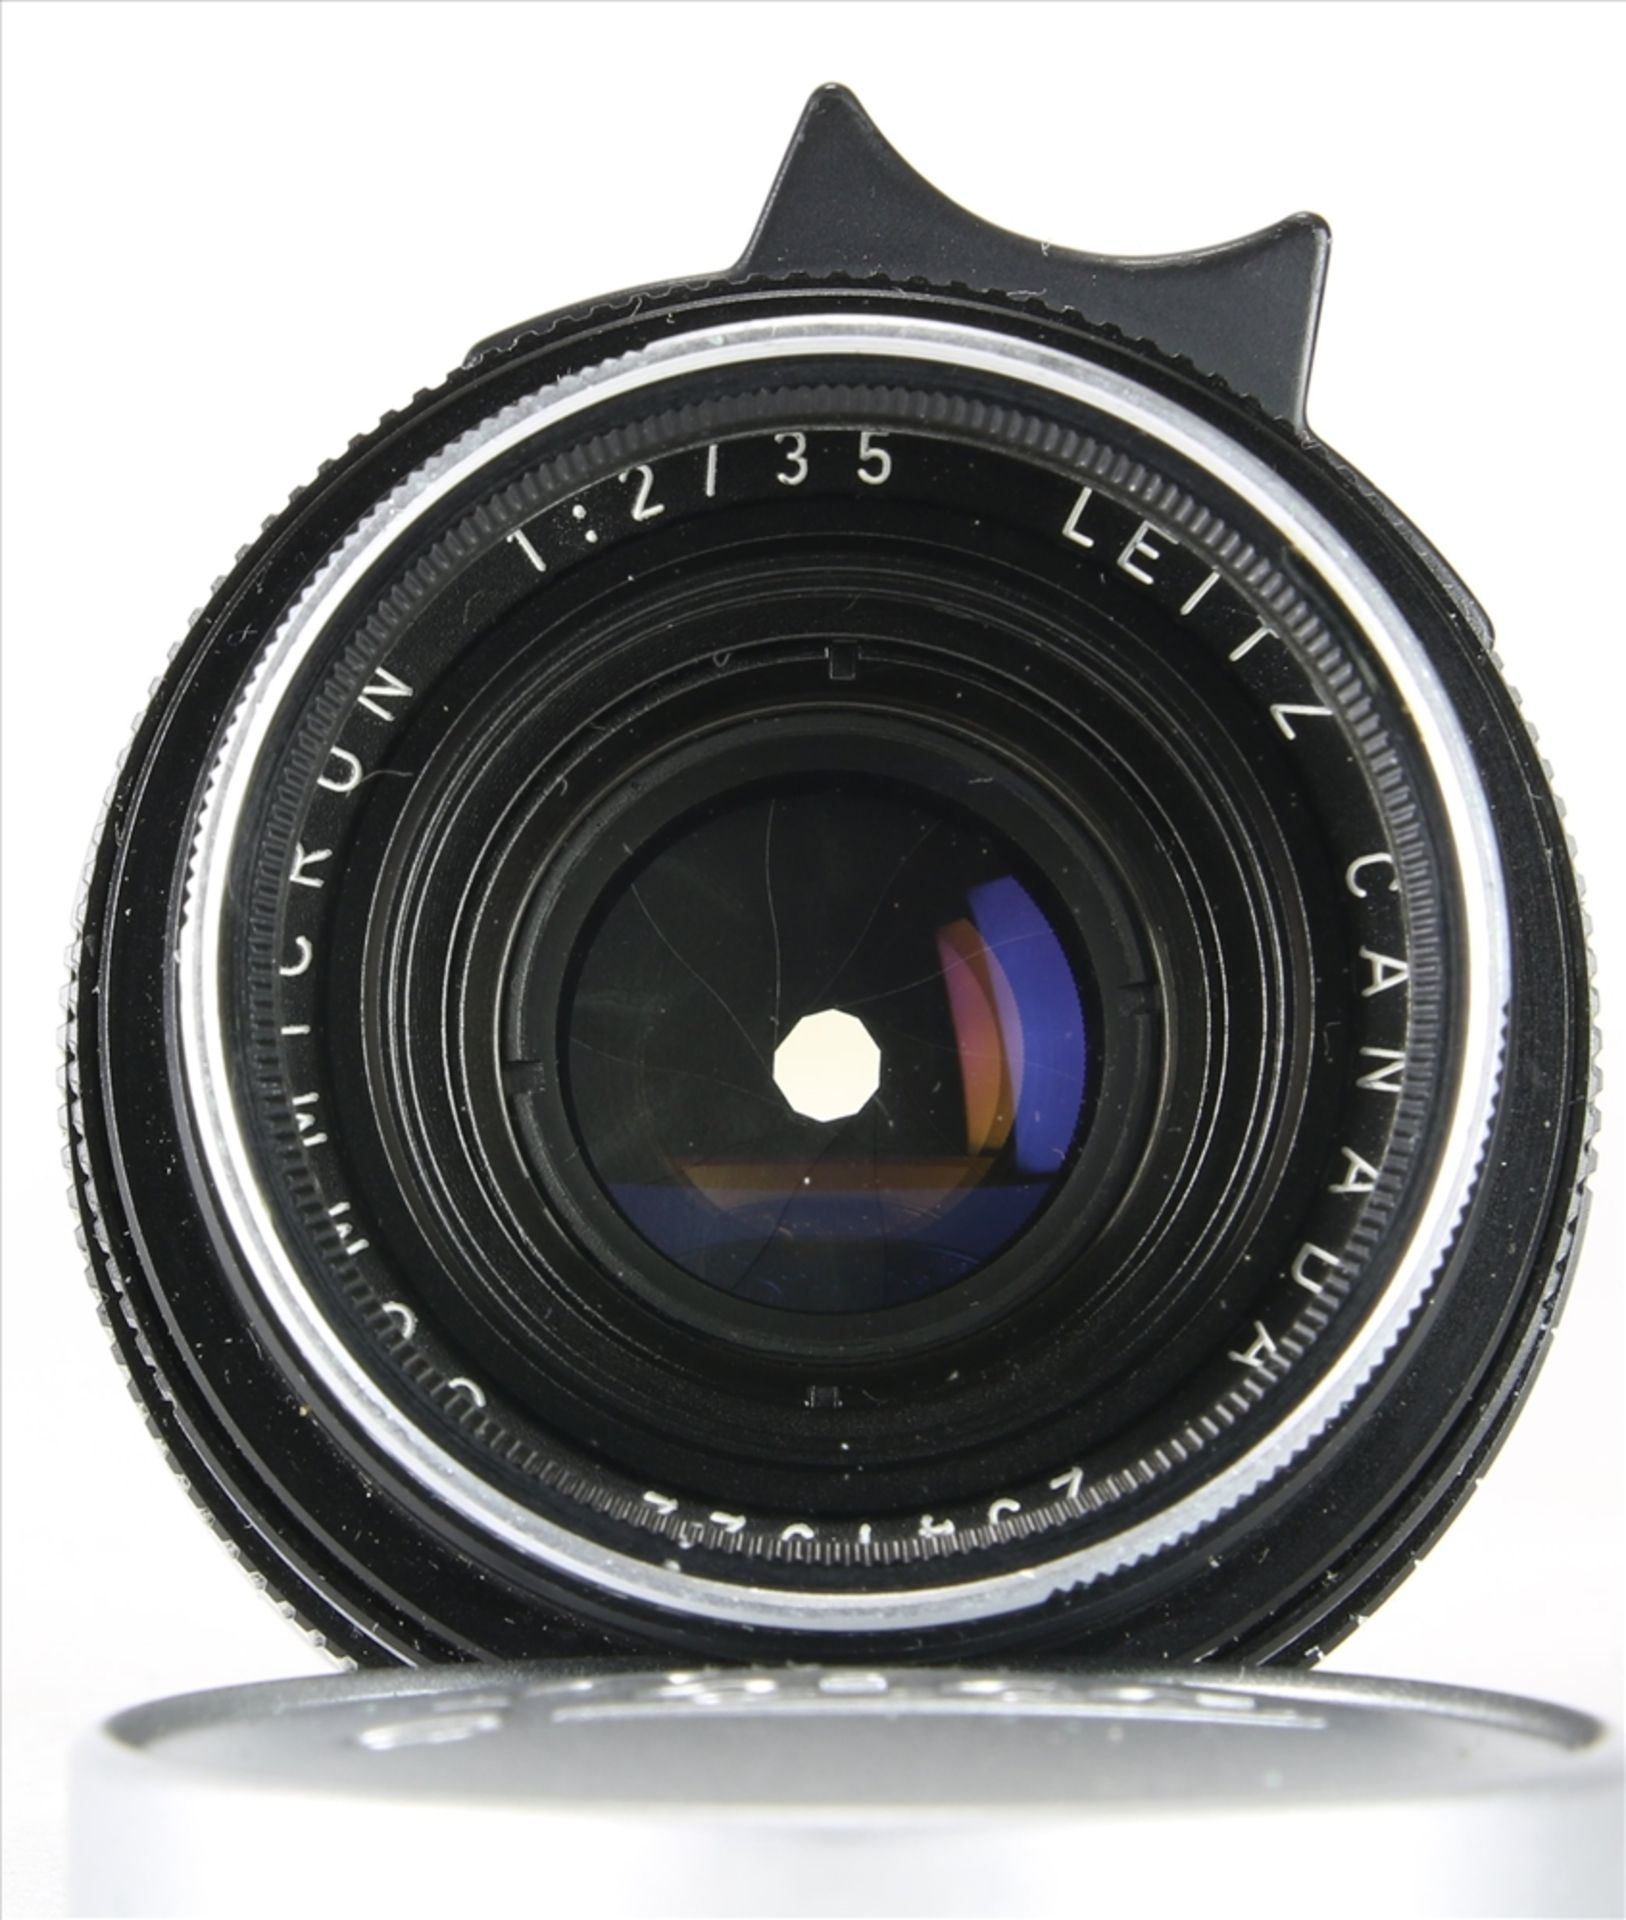 Leica Objektiv Leitz Canada. Summicron 1:2 / 35. Nr. 2541322. In originaler Box. Nicht geprüft. - Bild 5 aus 8